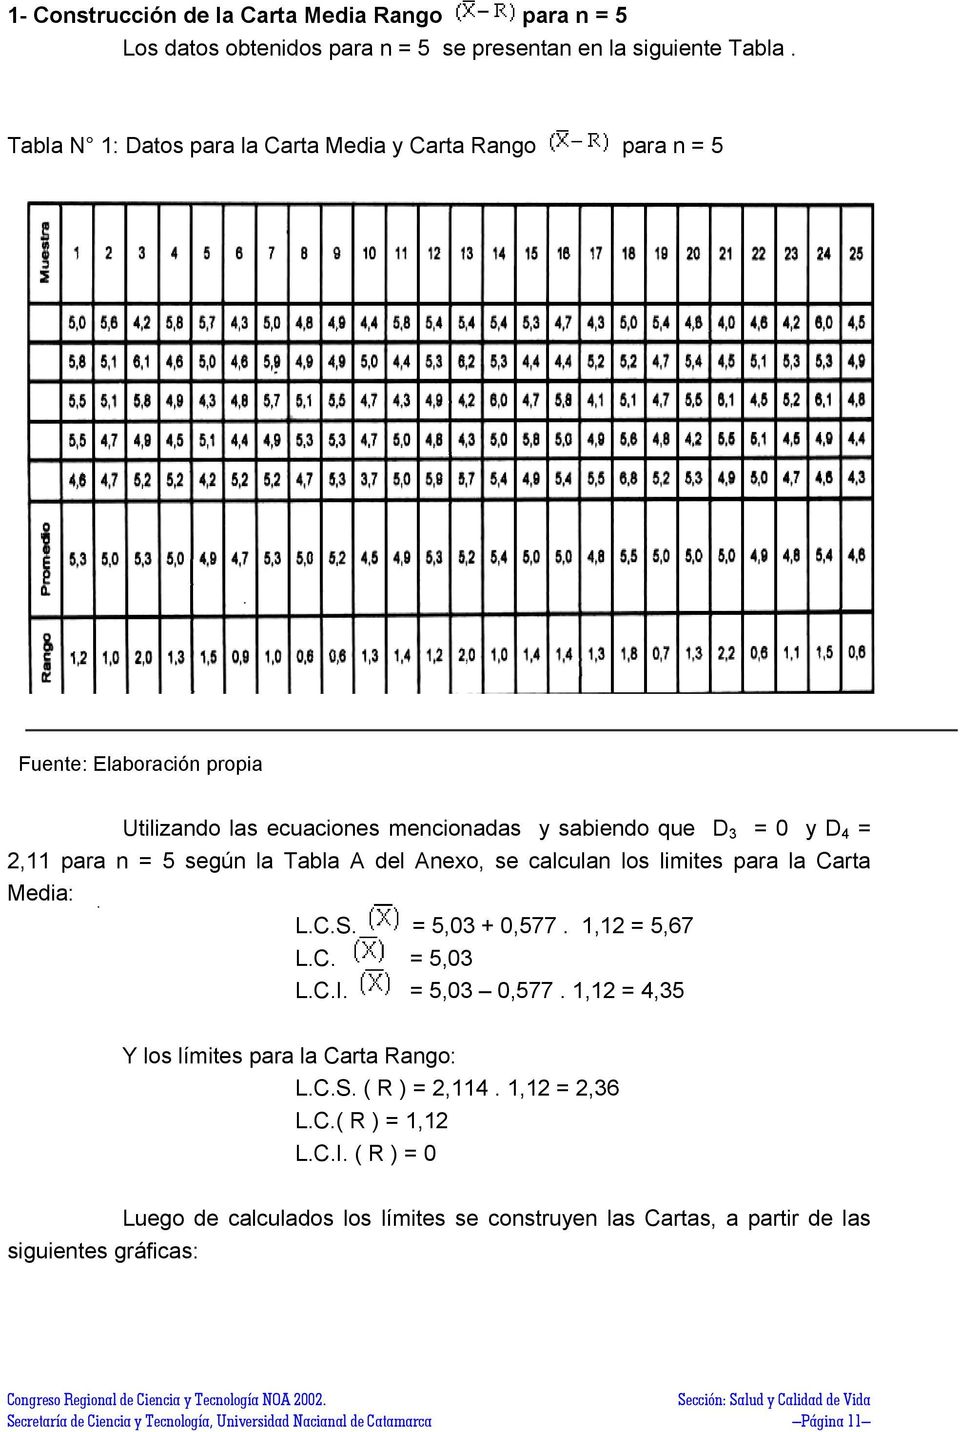 la Tabla A del Anexo, se calculan los limites para la Carta Media: = 5,03 + 0,577. 1,12 = 5,67 L.C.S. L.C. = 5,03 L.C.I. = 5,03 0,577.